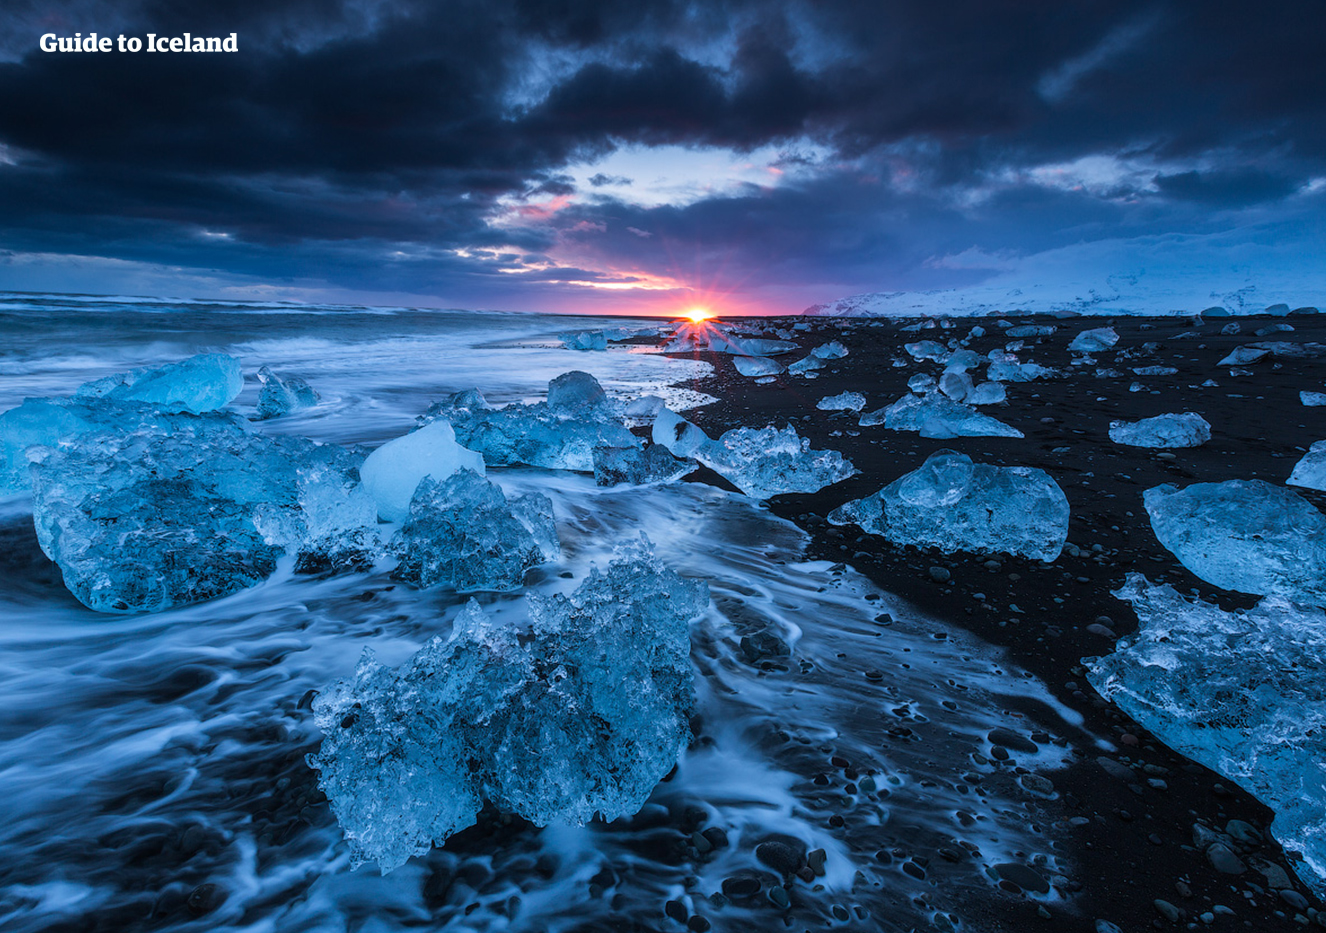 Lors de ce road trip, vous pouvez visiter la plage de diamants le soir et regarder le soleil se coucher parmi les icebergs scintillants.